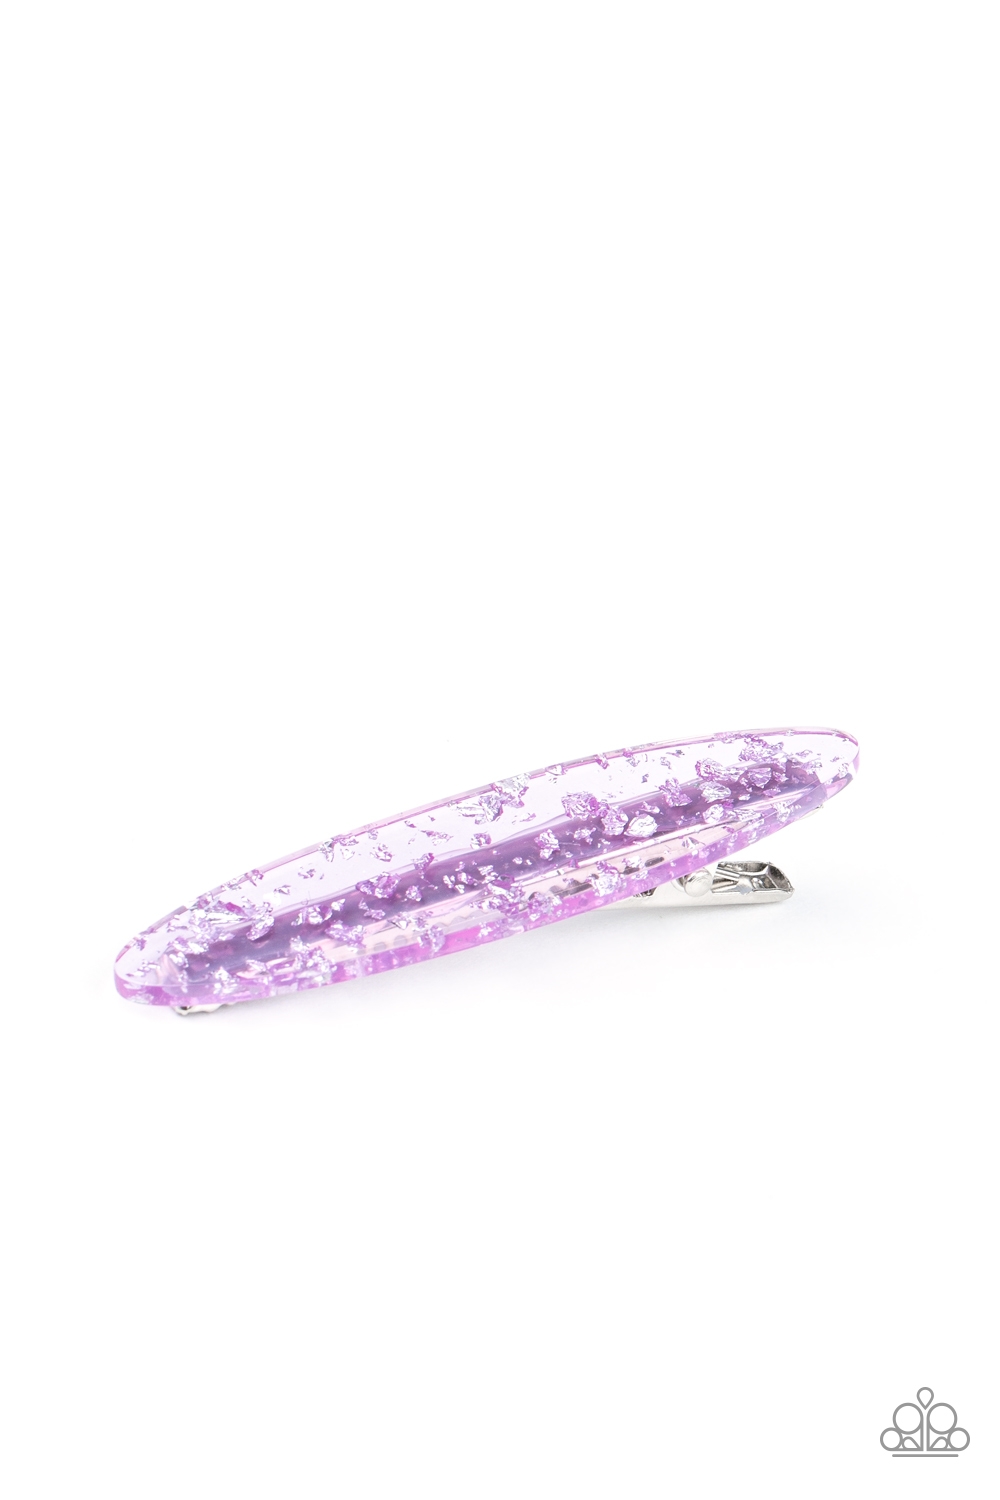 HairClip - Confetti Couture - Purple